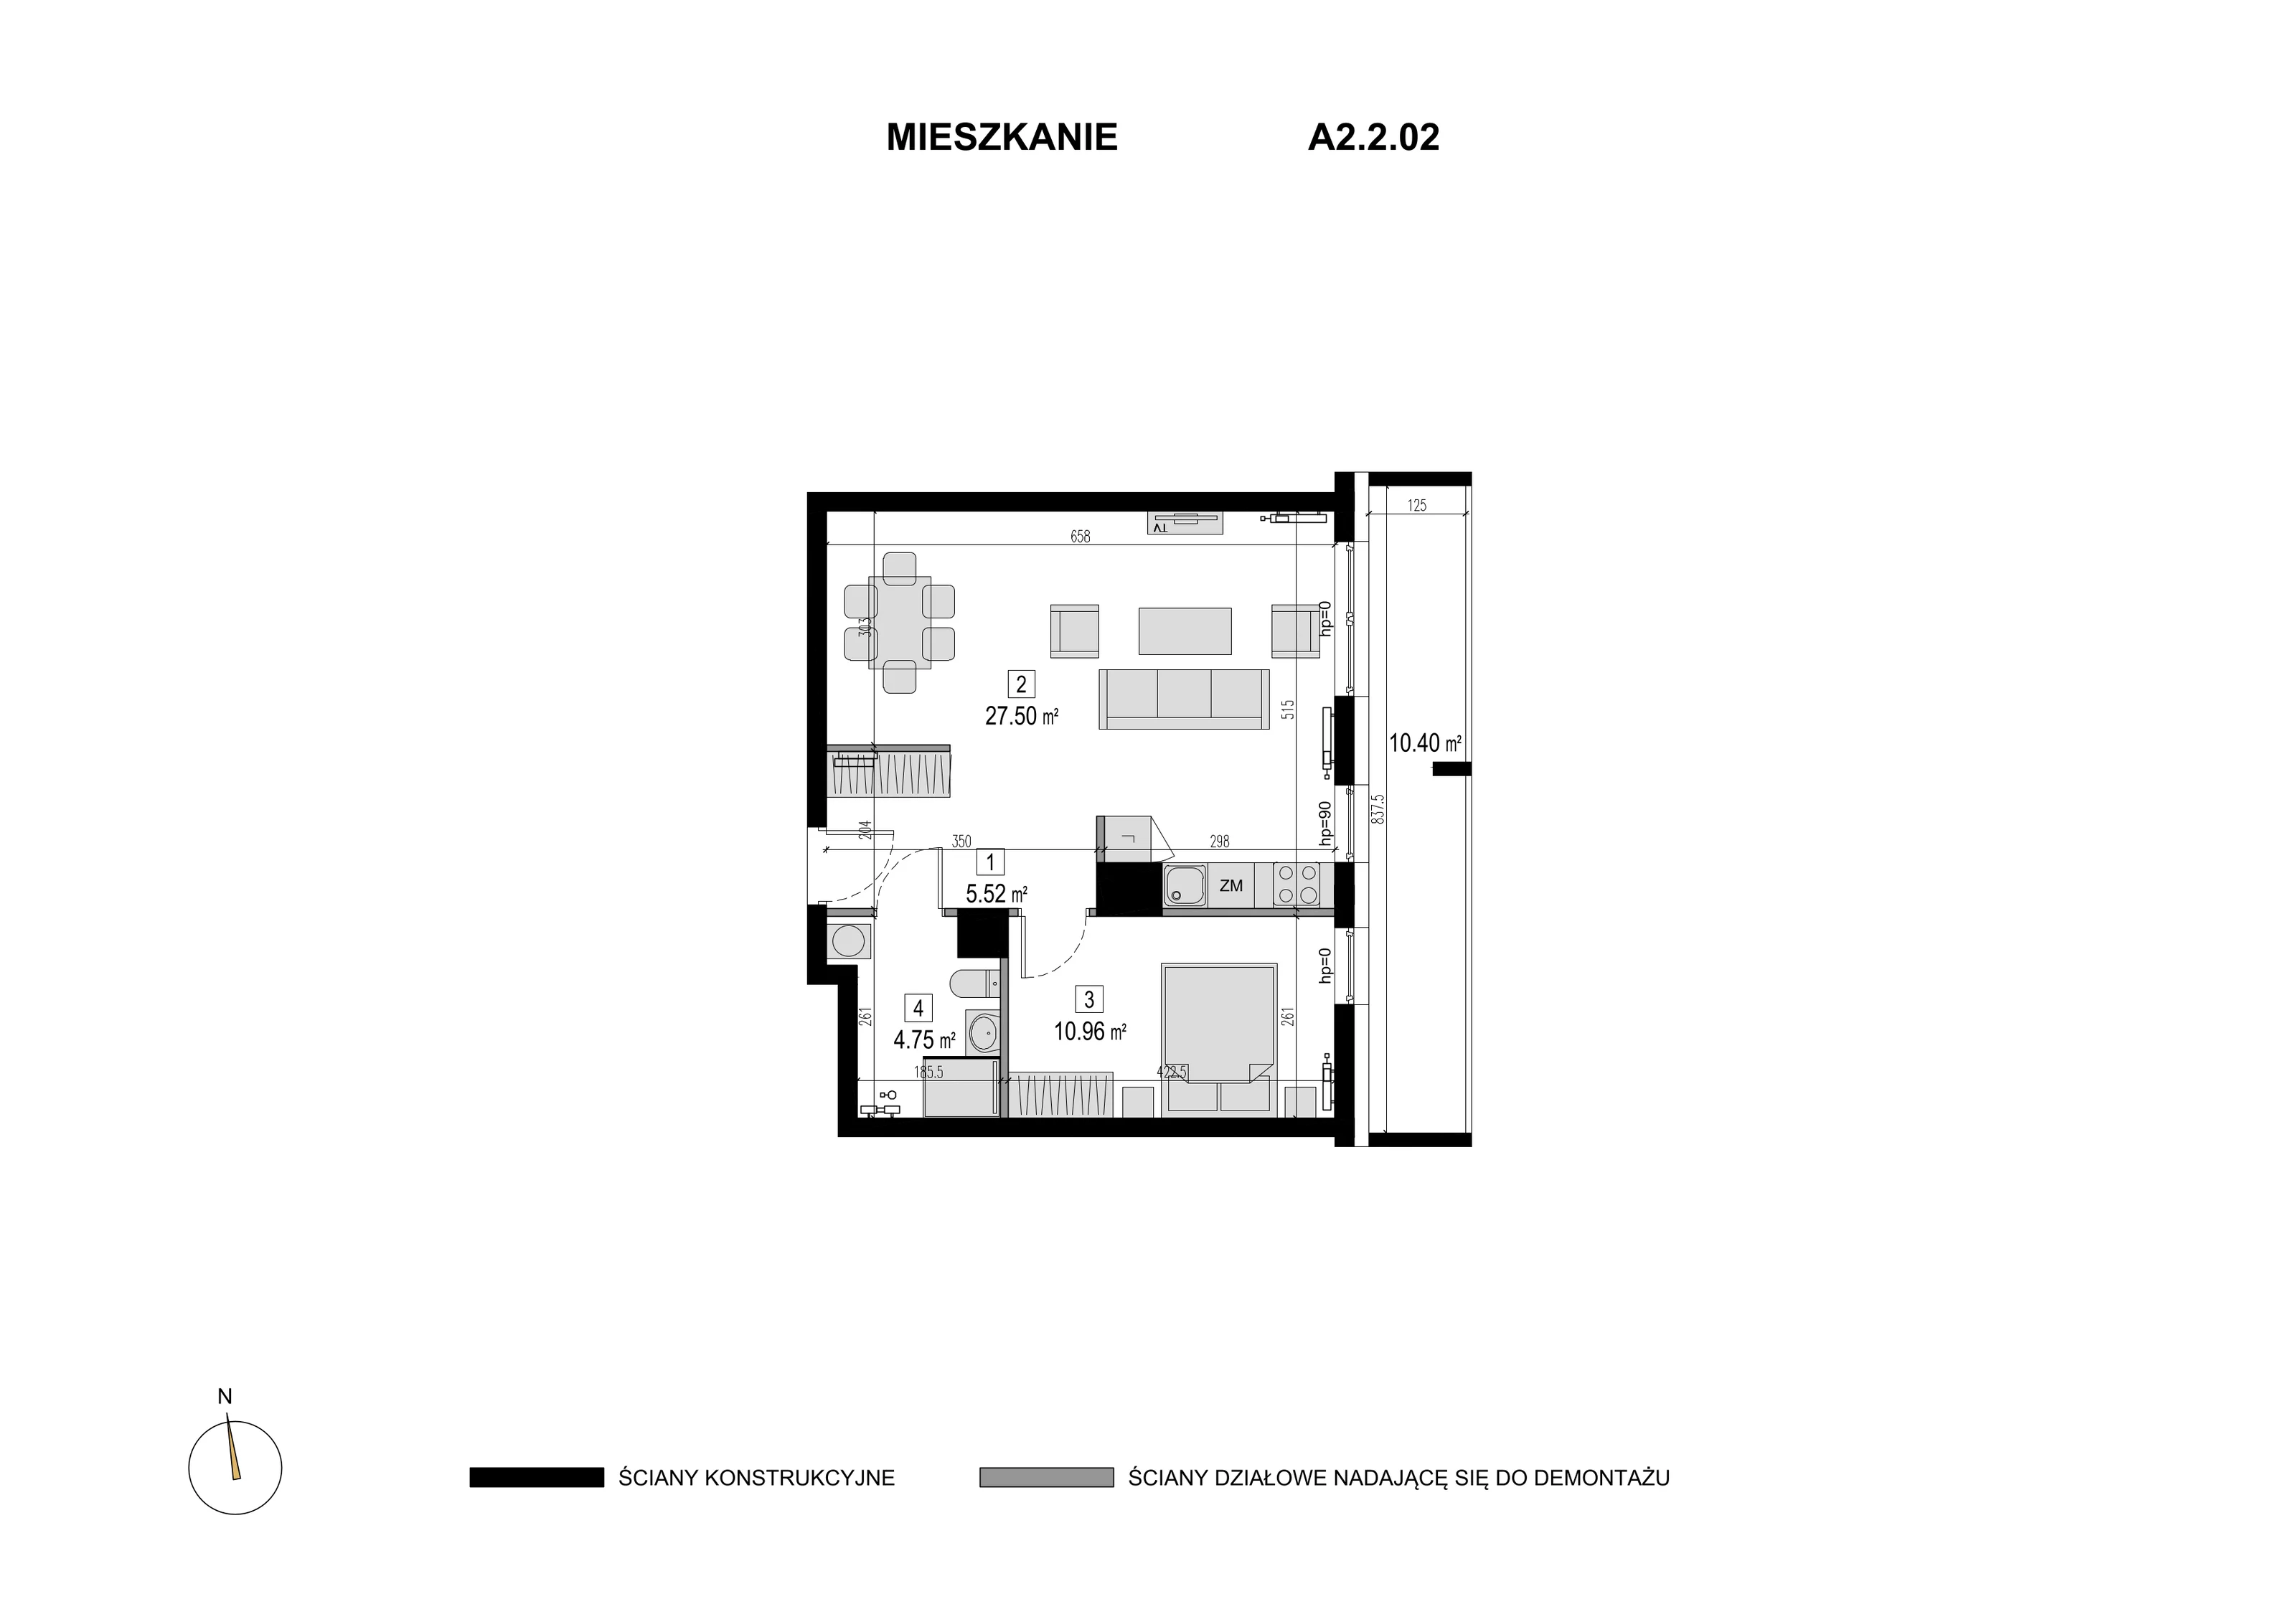 Mieszkanie 48,73 m², piętro 1, oferta nr A2.2.02, Novaforma, Legnica, ul. Chojnowska